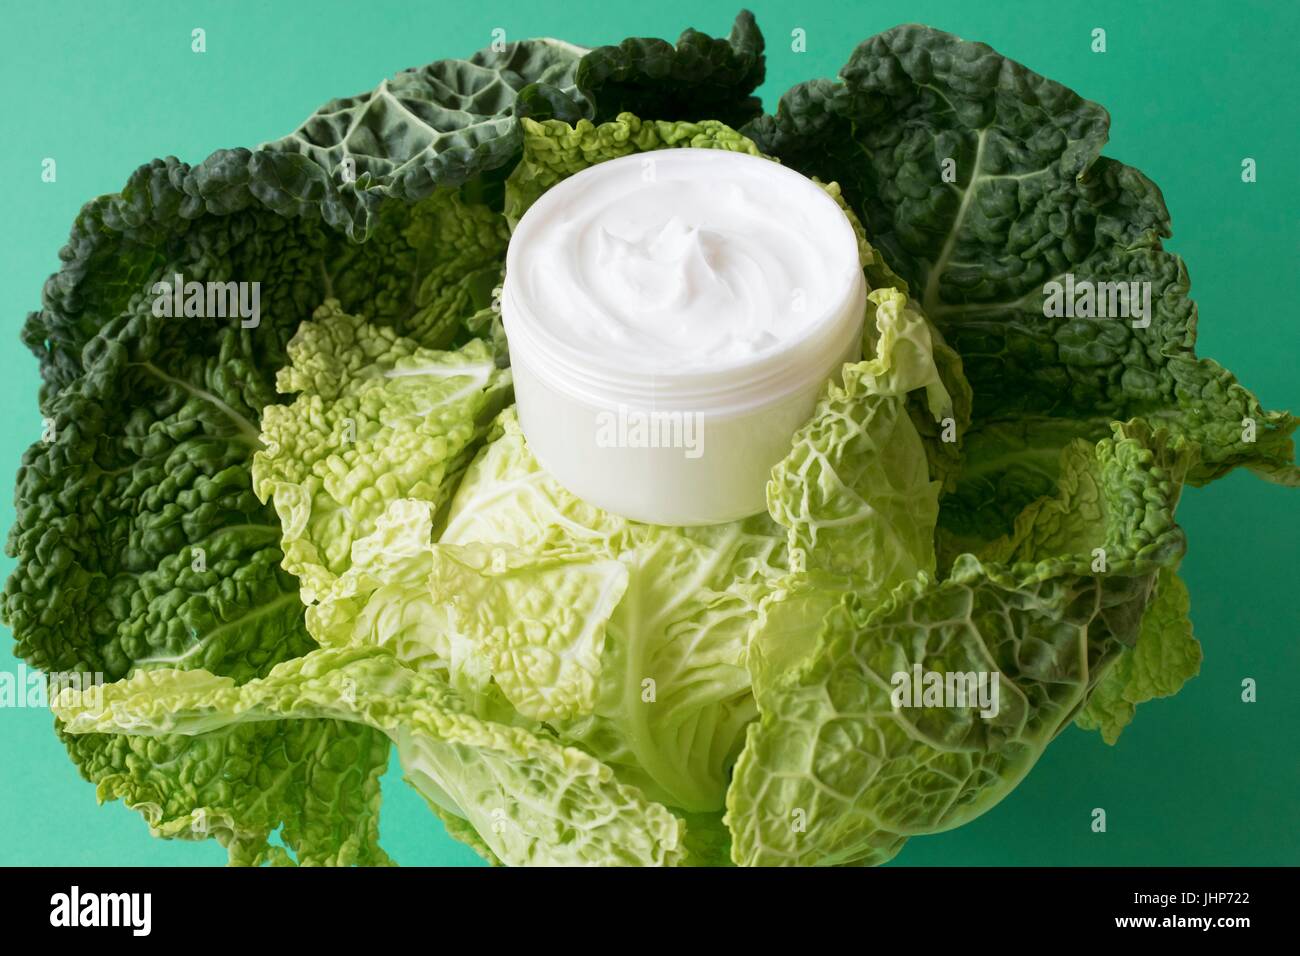 Pot de crème hydratante et feuilles de chou sur un fond vert. Image conceptuelle d'ingrédients naturels dans les cosmétiques. Banque D'Images